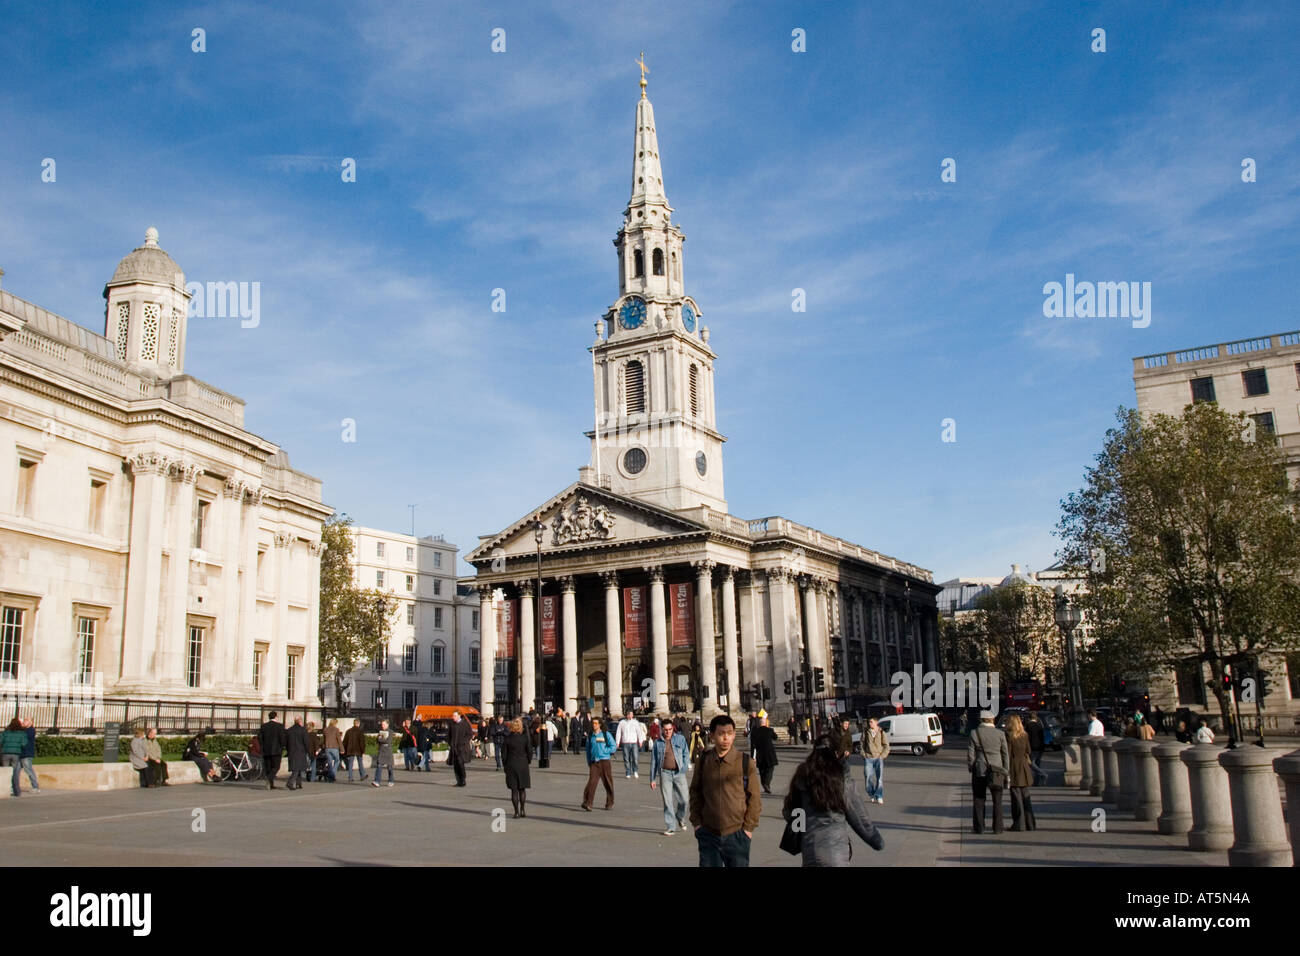 La National Gallery et Saint Martin's Church dans le domaine à Trafalgar Square Londres GB Royaume-Uni sur une journée ensoleillée Banque D'Images